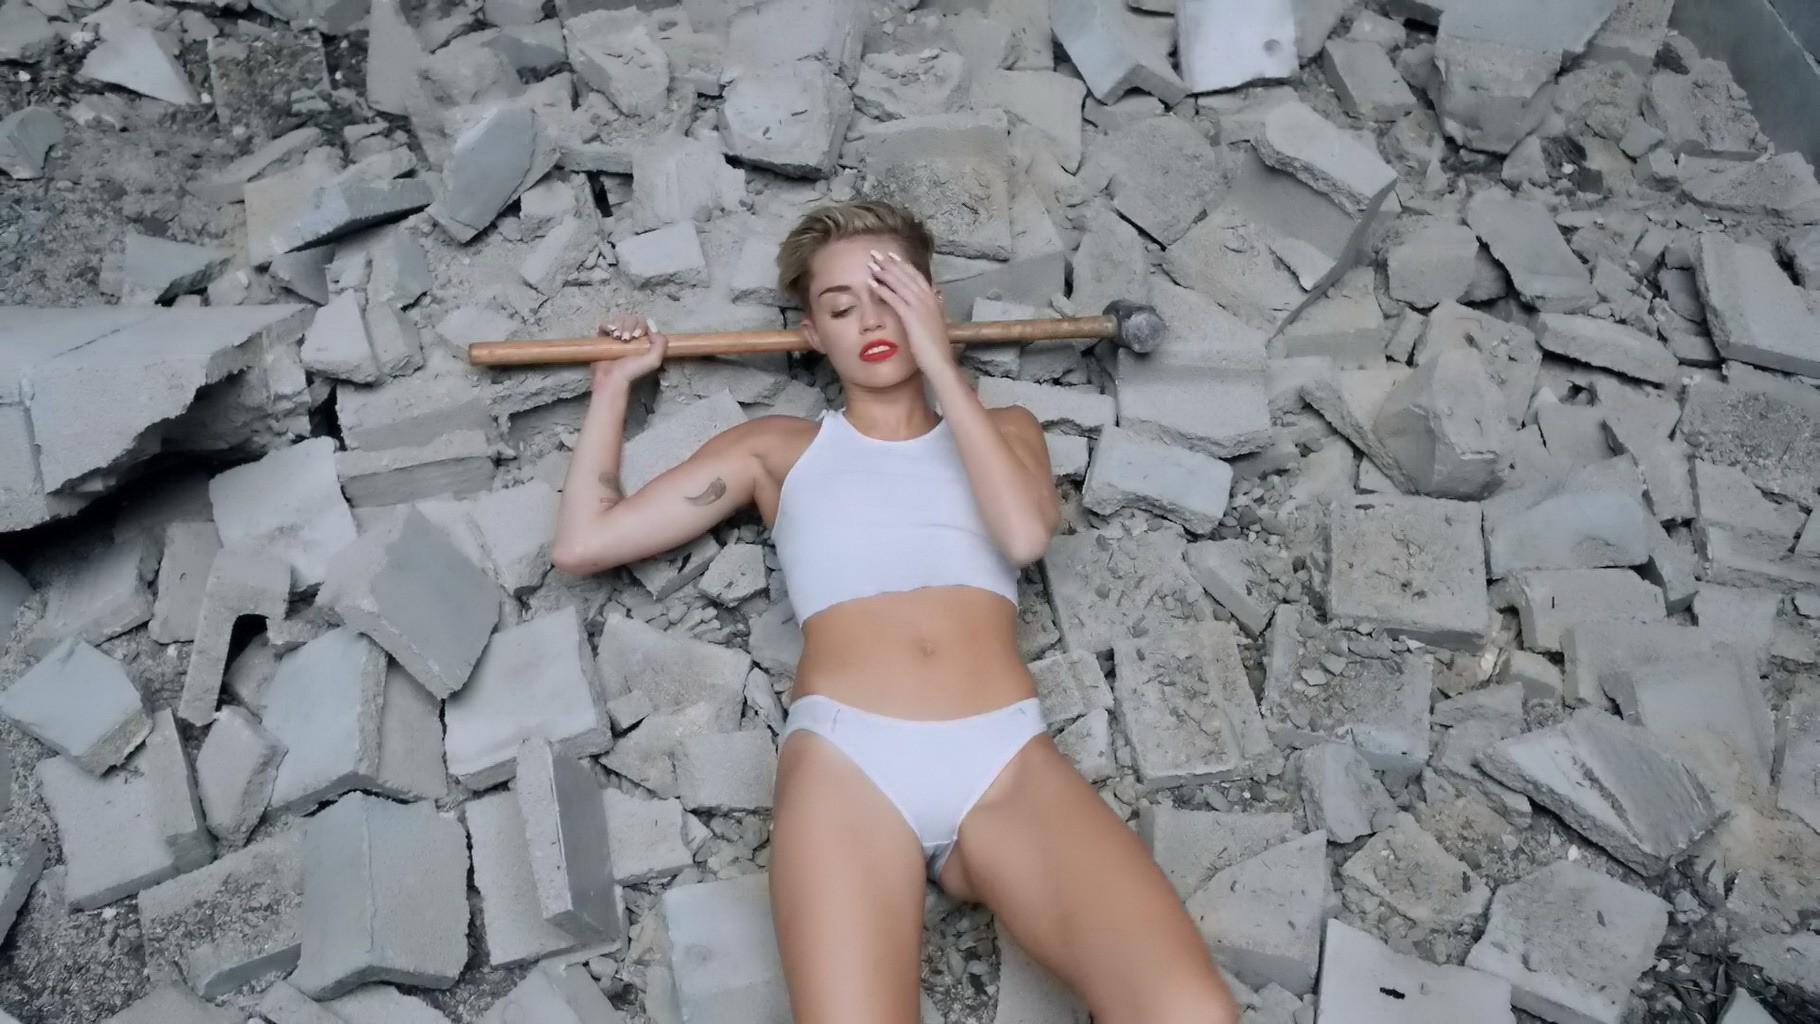 Miley cyrus muestra su cuerpo totalmente desnudo durante el rodaje del video musical wrecking ball
 #75219388